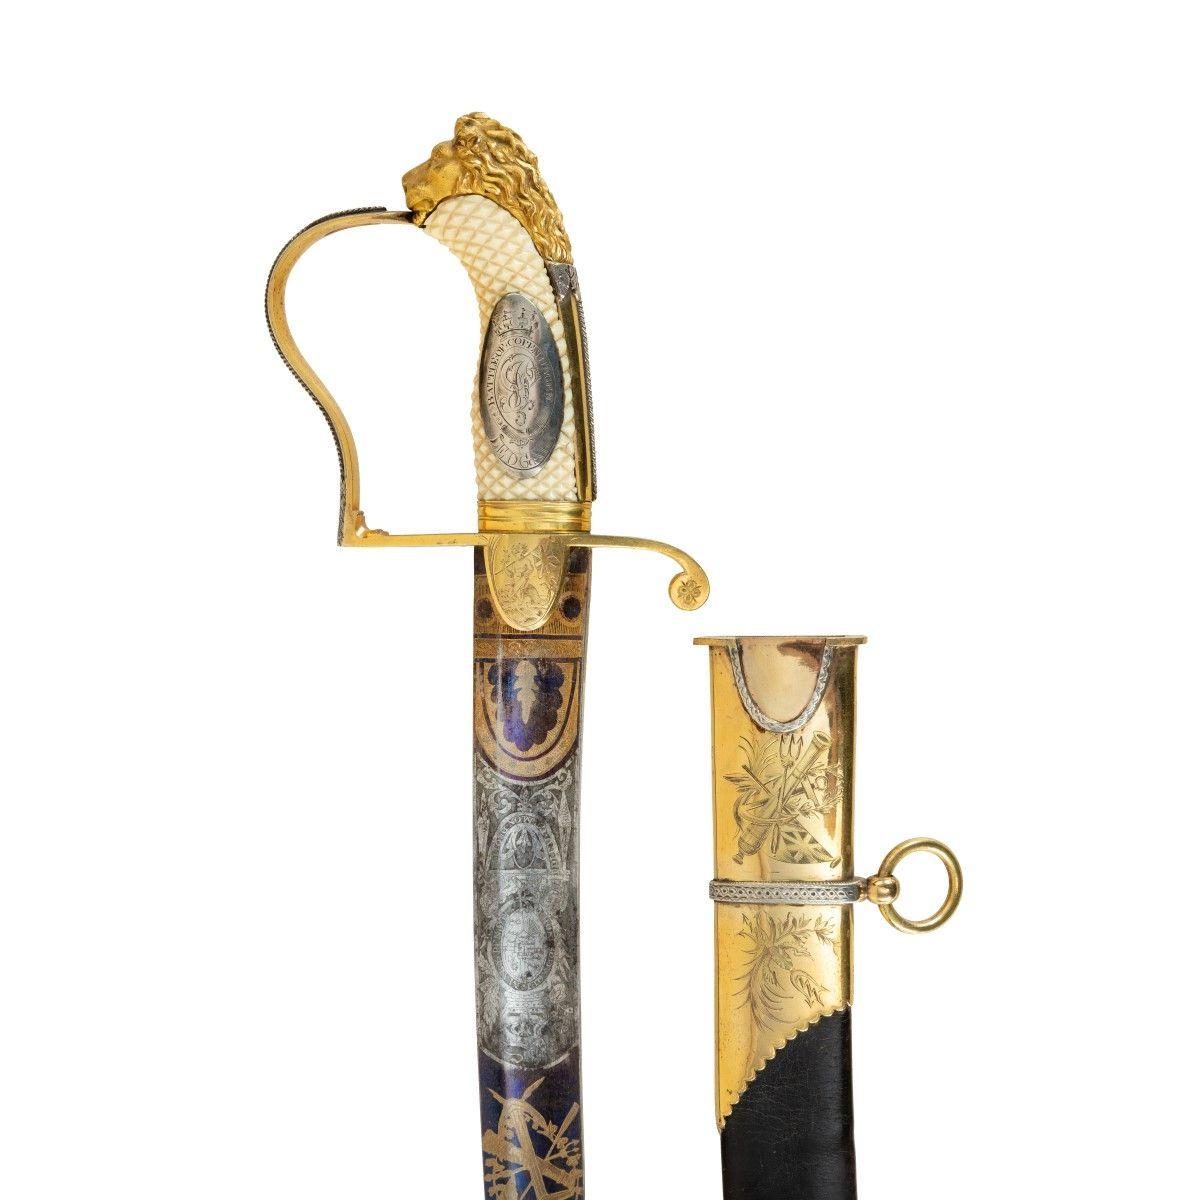 Dieses gebogene Schwert hat eine deutsche Klinge aus gebläutem Stahl und einen Griff aus Elfenbein mit Kreuzschraffur, der silberne und vergoldete Beschläge in Form eines Löwenkopfes und einer Löwenmähne trägt. Der Griff ist mit einer ovalen